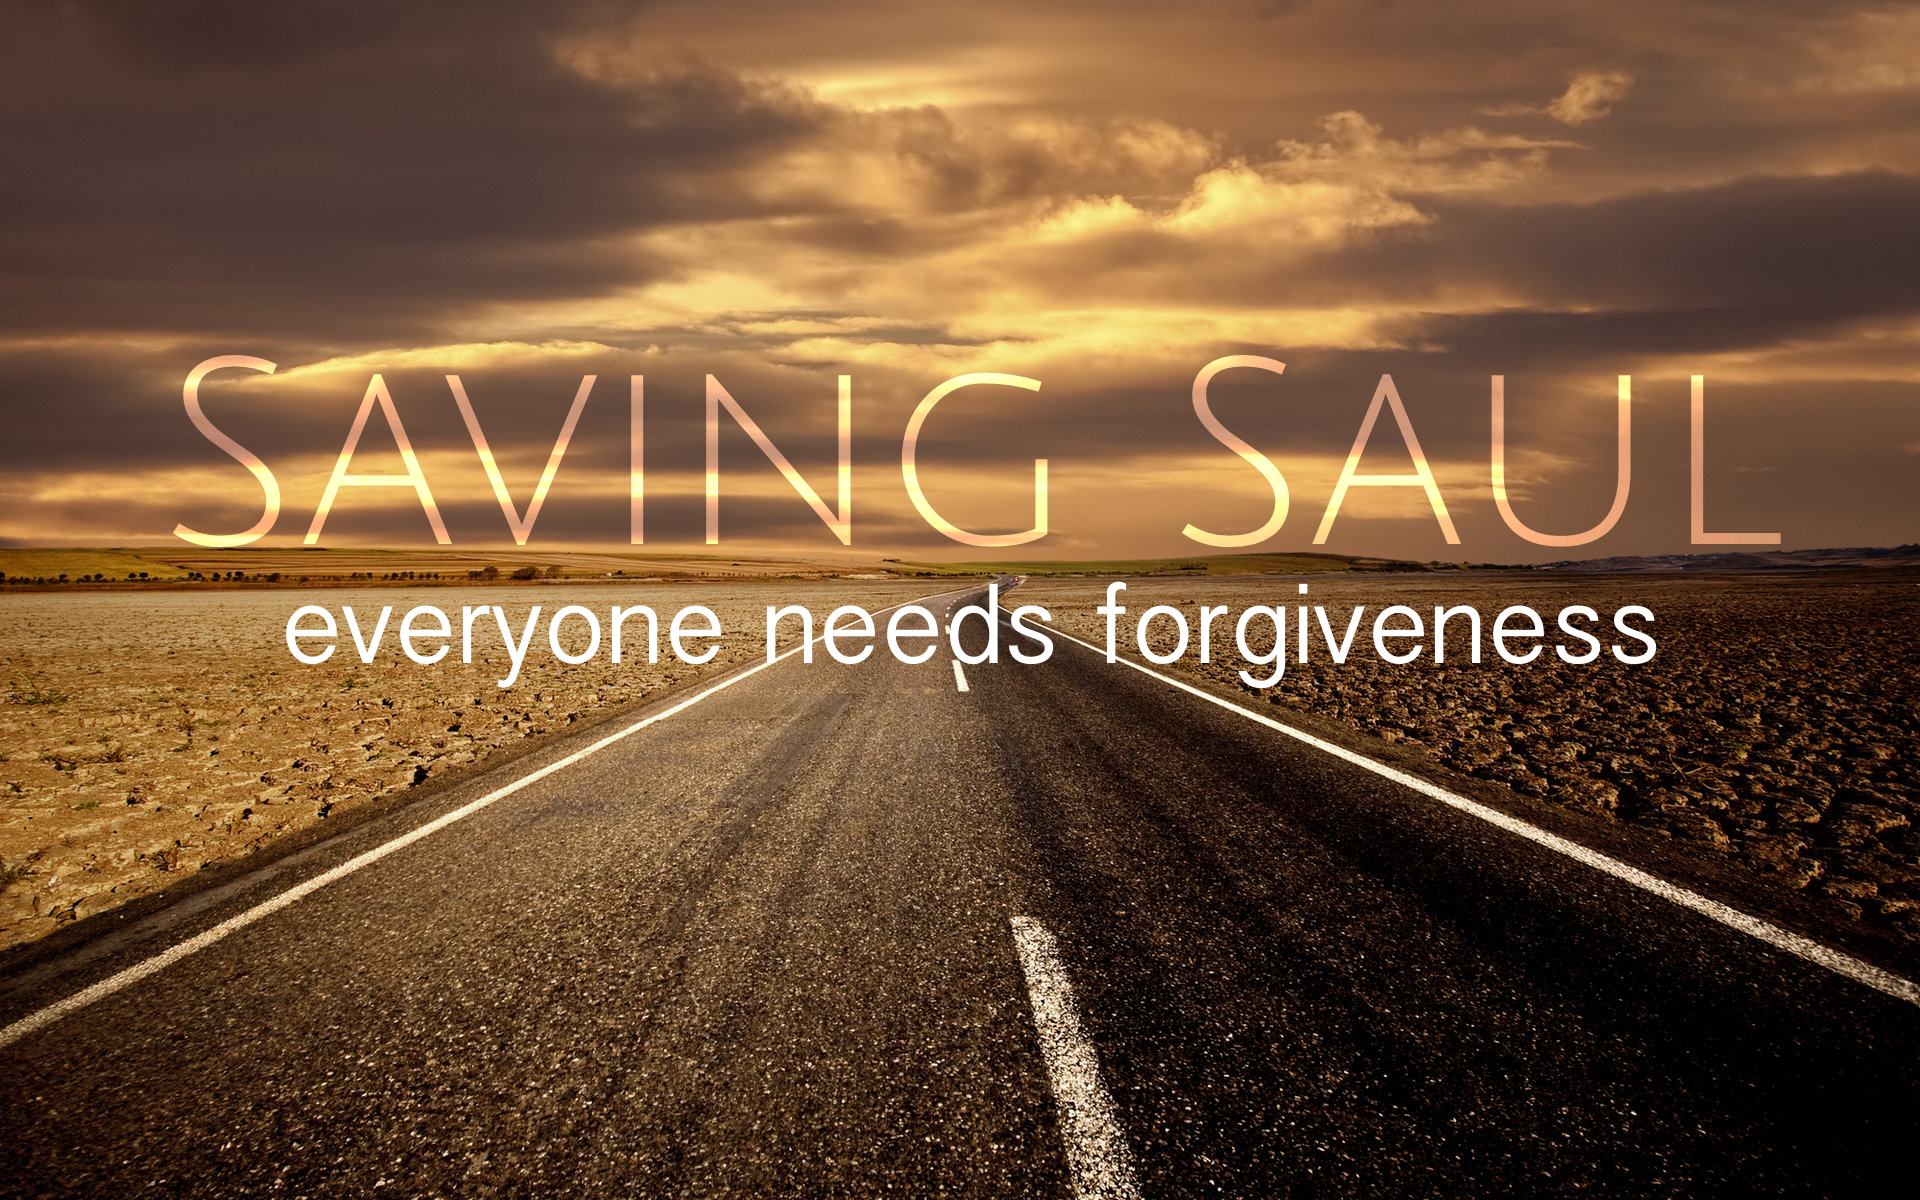 Saving Saul part 4